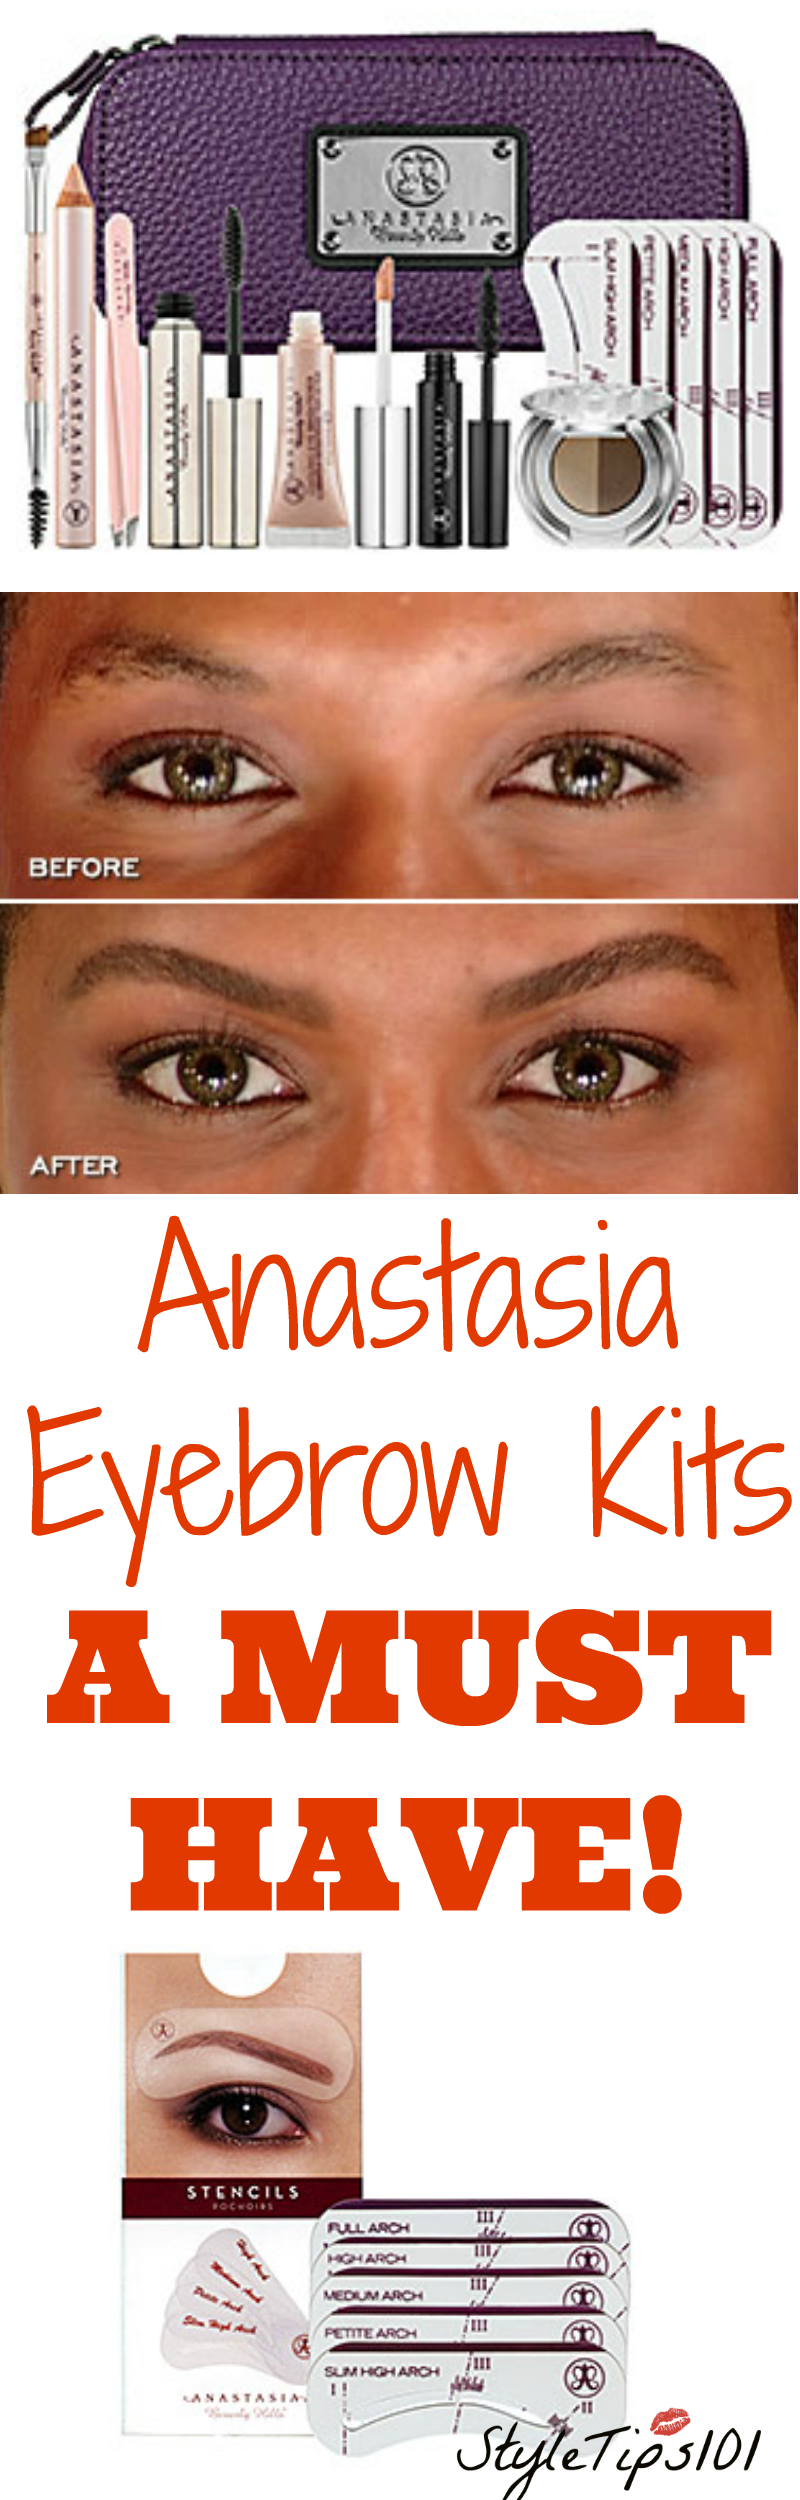 Anastasia Eyebrow Kit